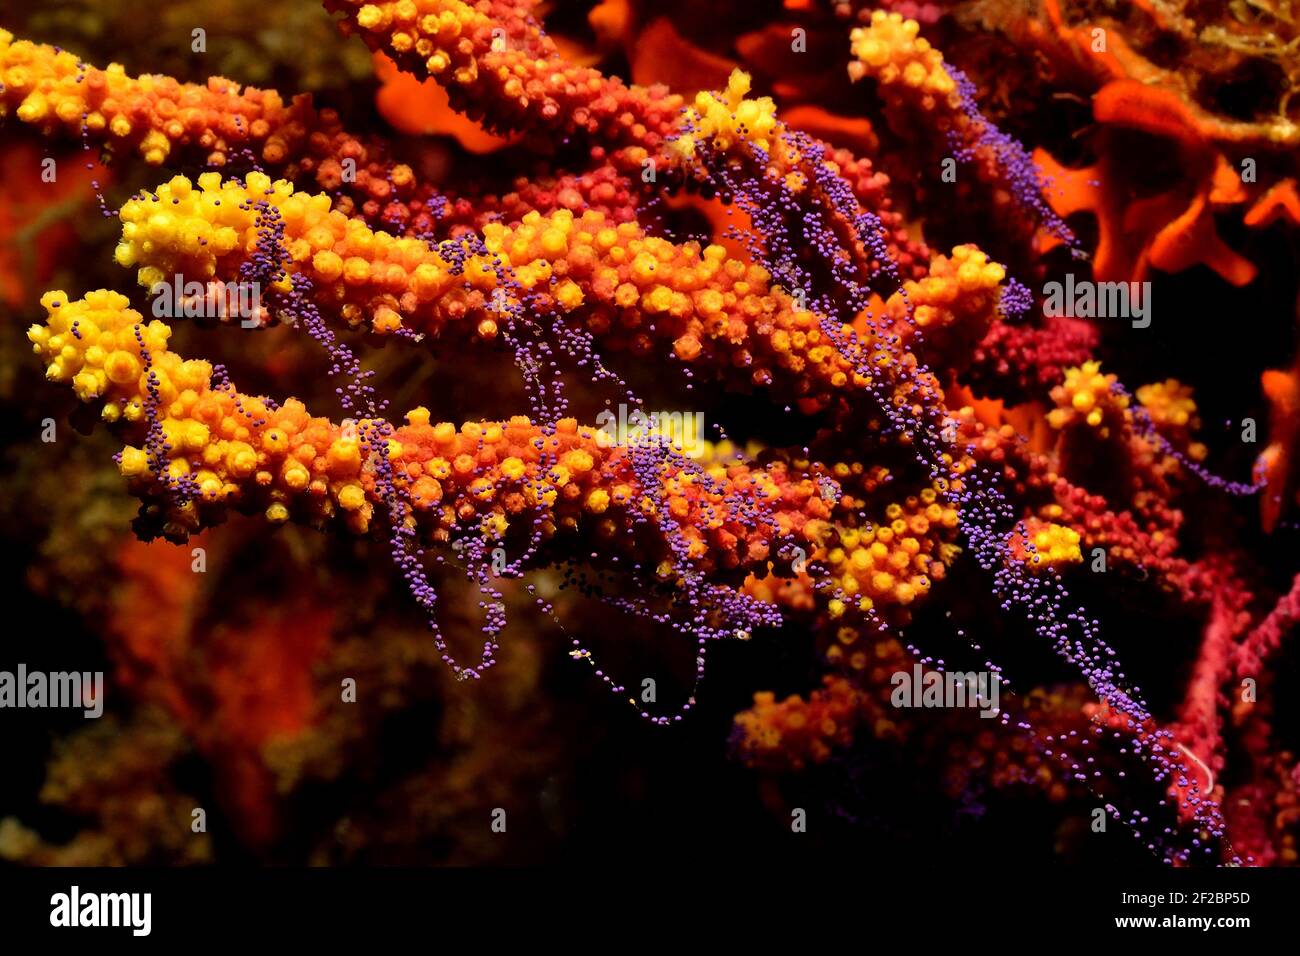 Paramuricea clavata, violescent sea-whip spawning, Farbwechselnde Gorgonie beim Ablaichen, Tamariu, Costa Brava, Spain, Mediterranean Sea Stock Photo